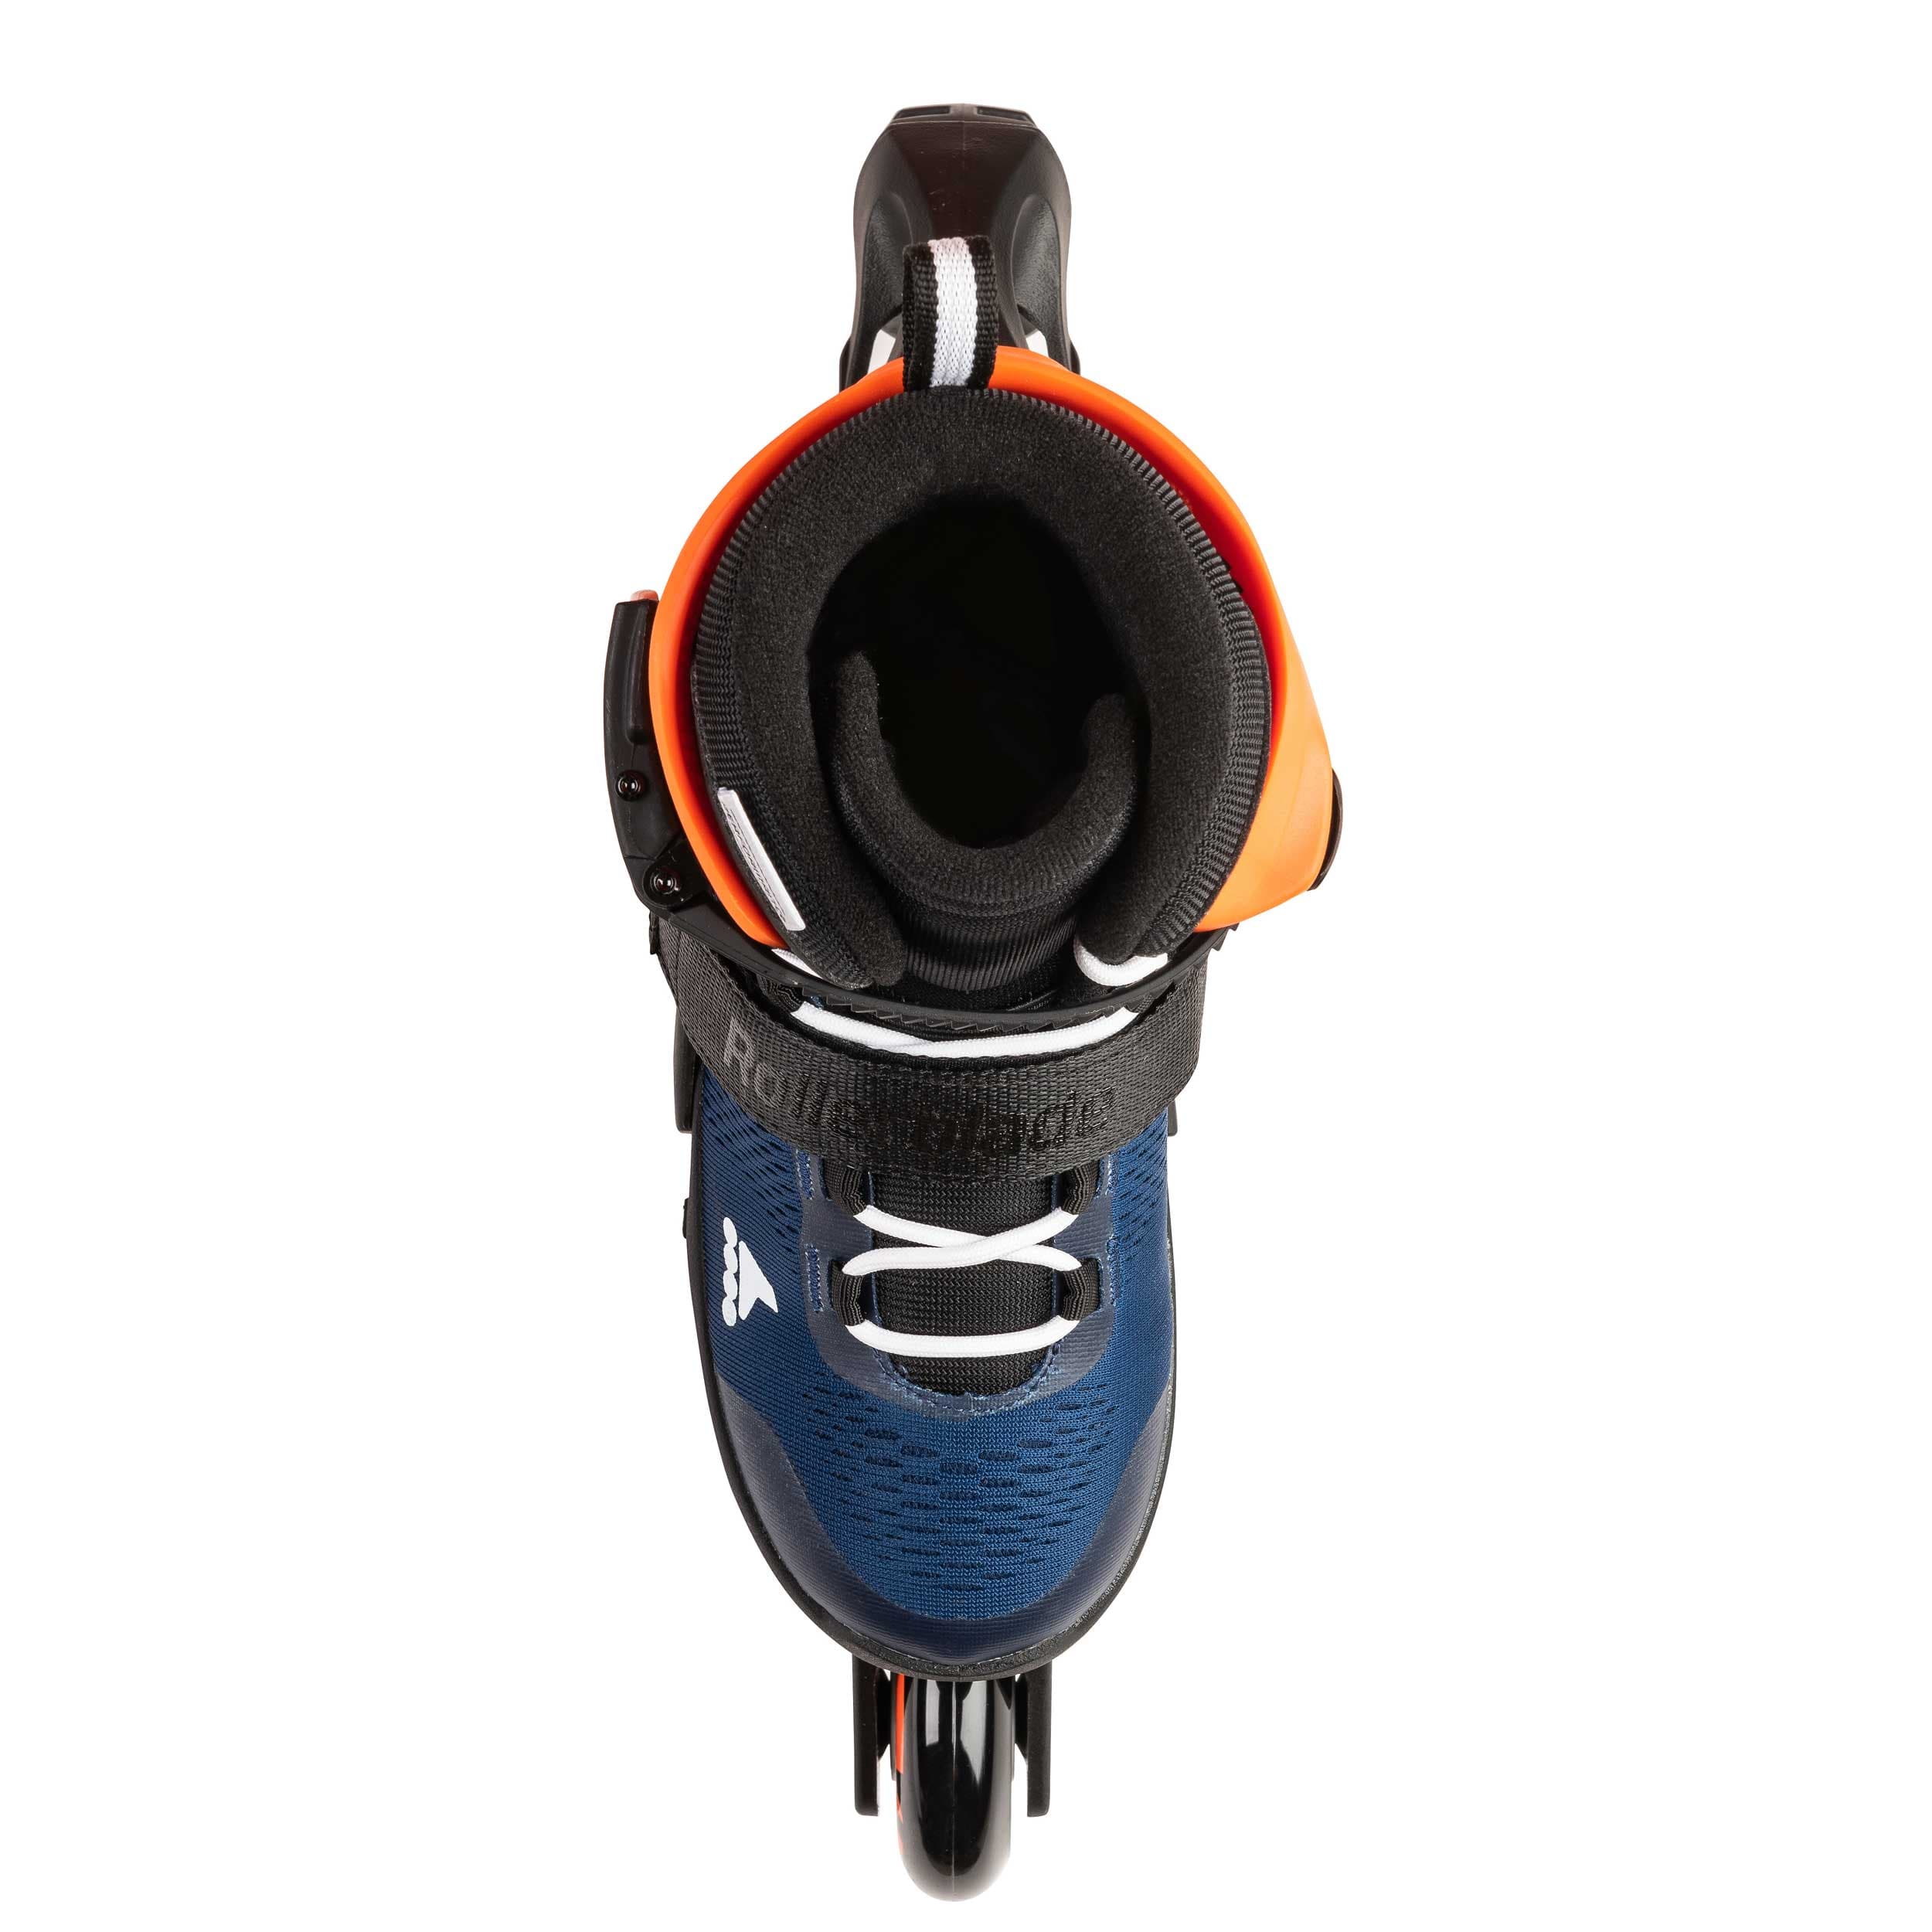 Rollerblade Microblade kinder inline skates 72 mm midnight blue / warm orange